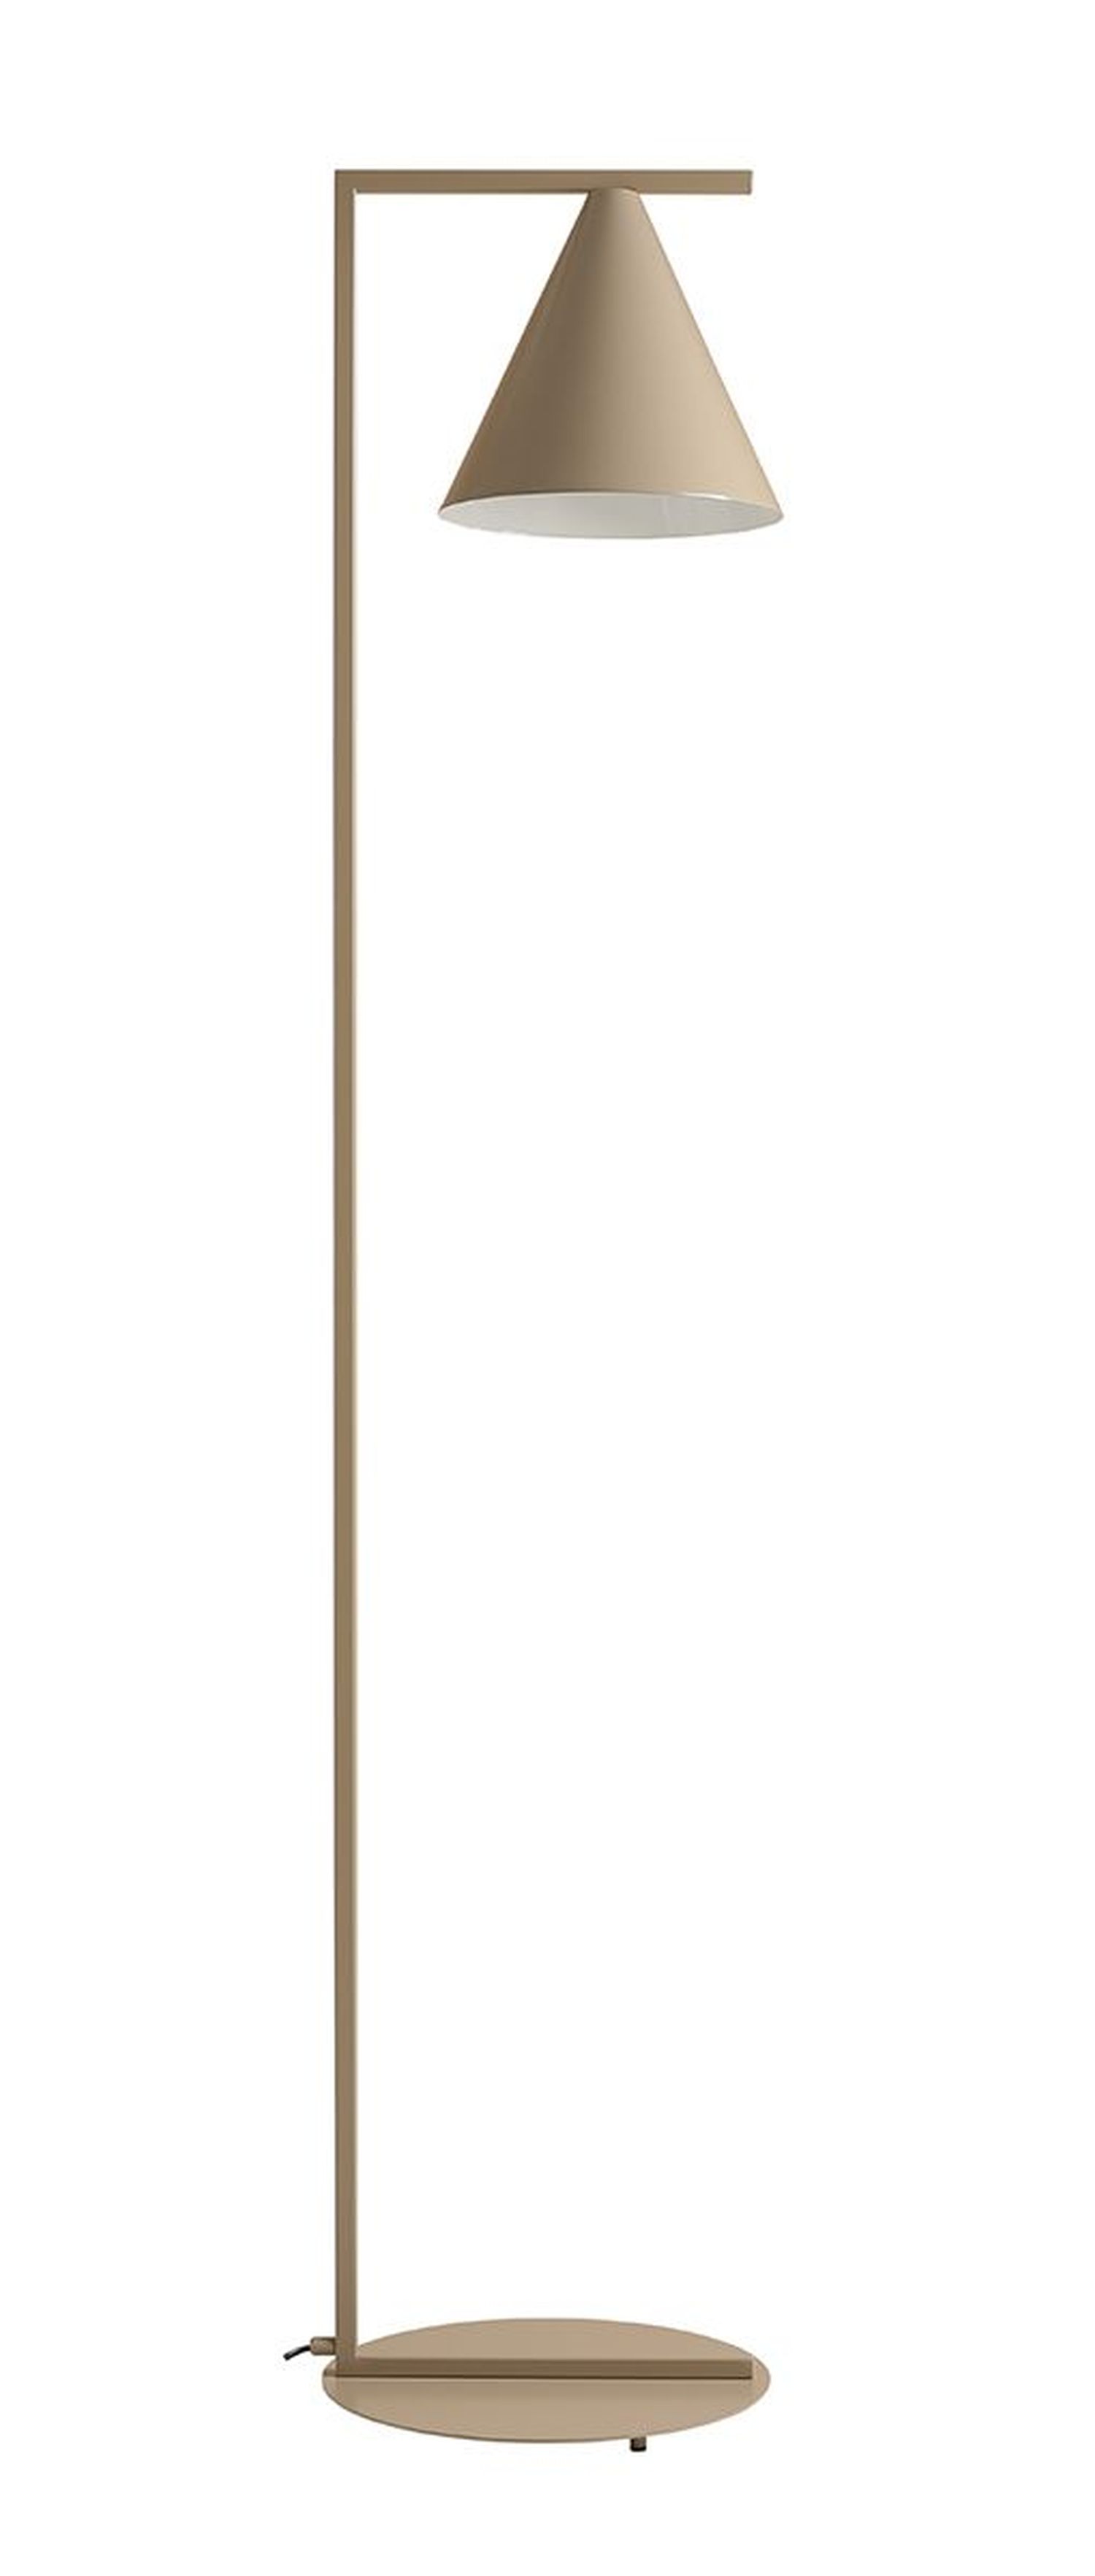 Dekorative Stehlampe Beige Metall Kegel E27 165 cm hoch